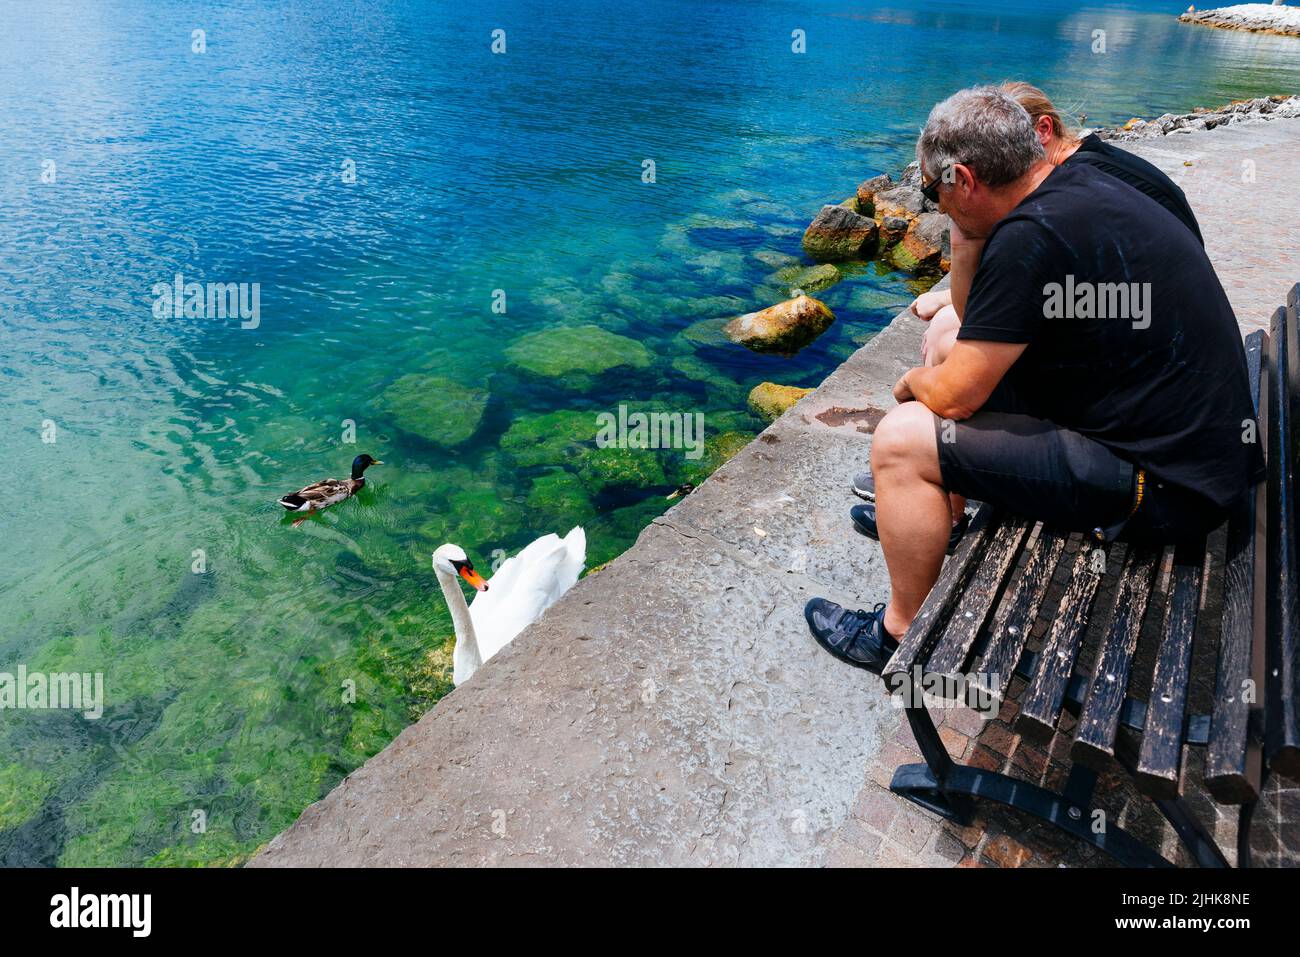 Les touristes observant la vie des oiseaux du lac de Garde. Promenade de Torbole. Nago–Torbole est une commune italienne de Trentin, dans la région du nord de l'Italie Banque D'Images